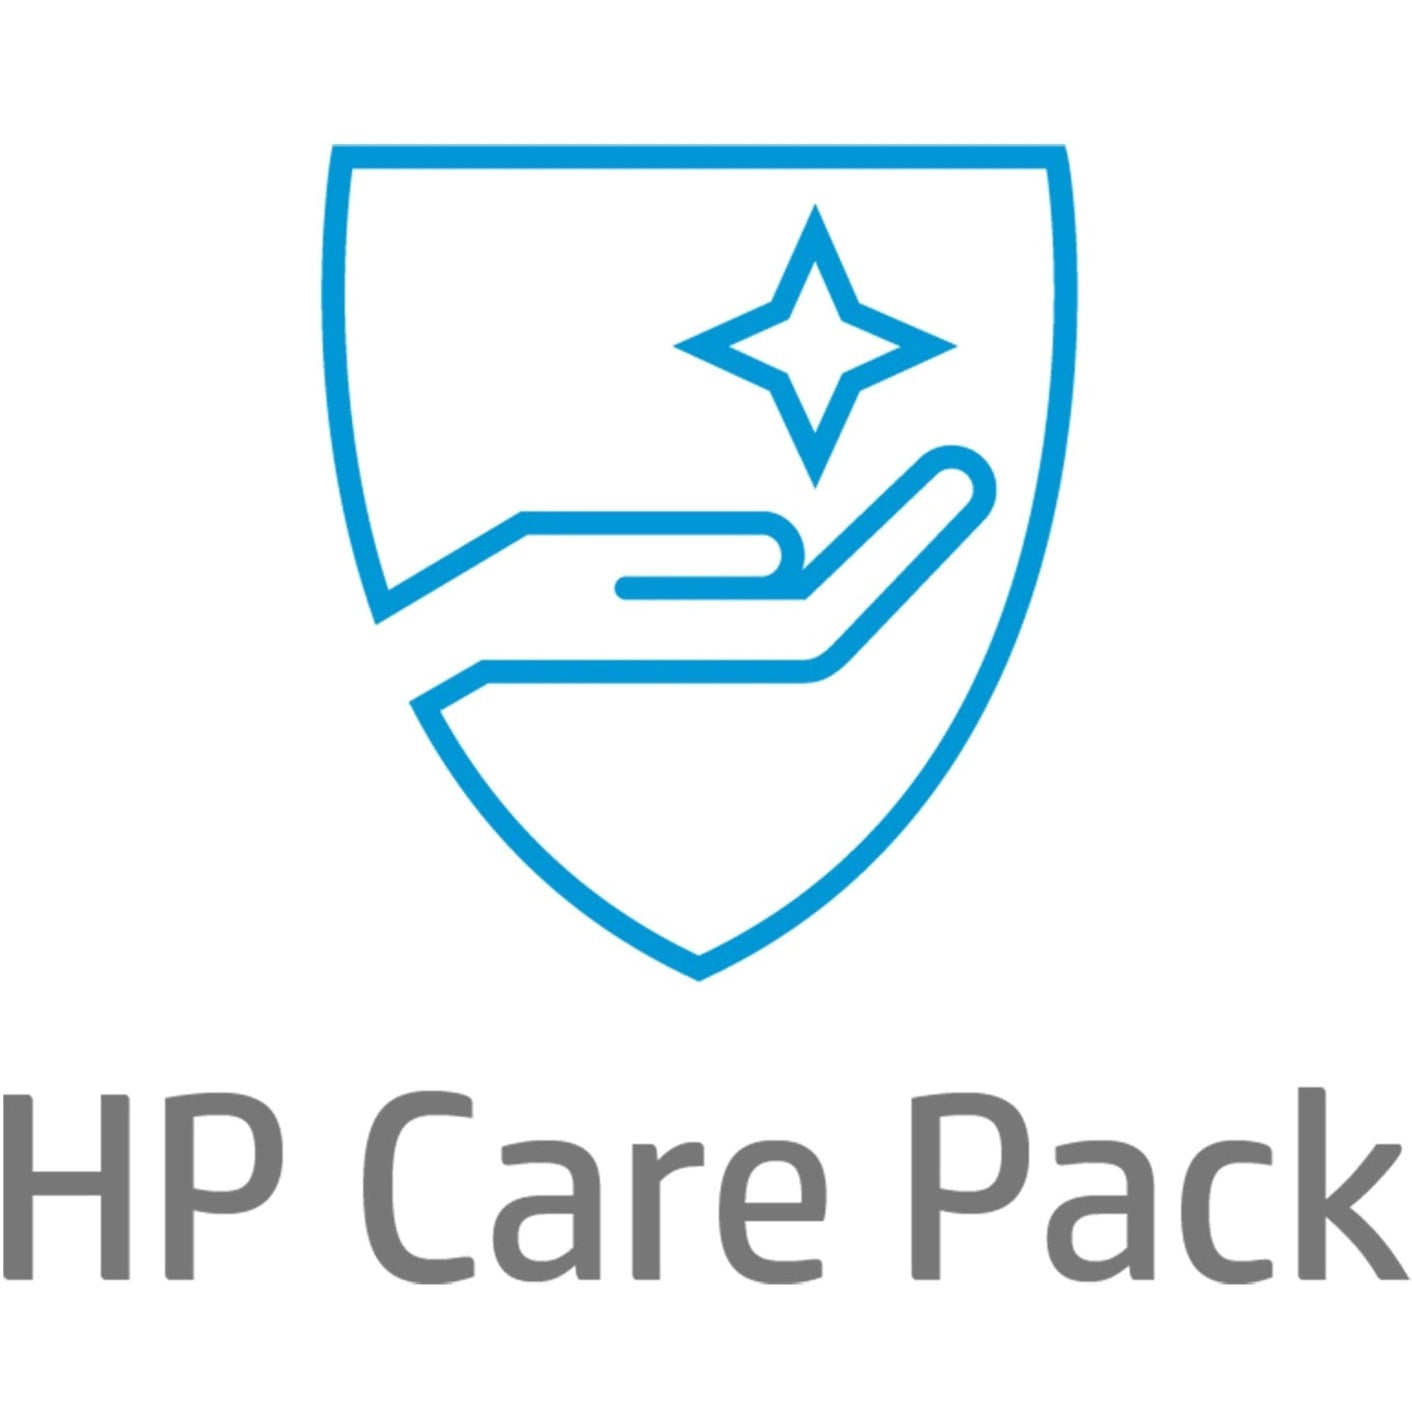 HP Care Pack - 5 Year - Service (U7864E)